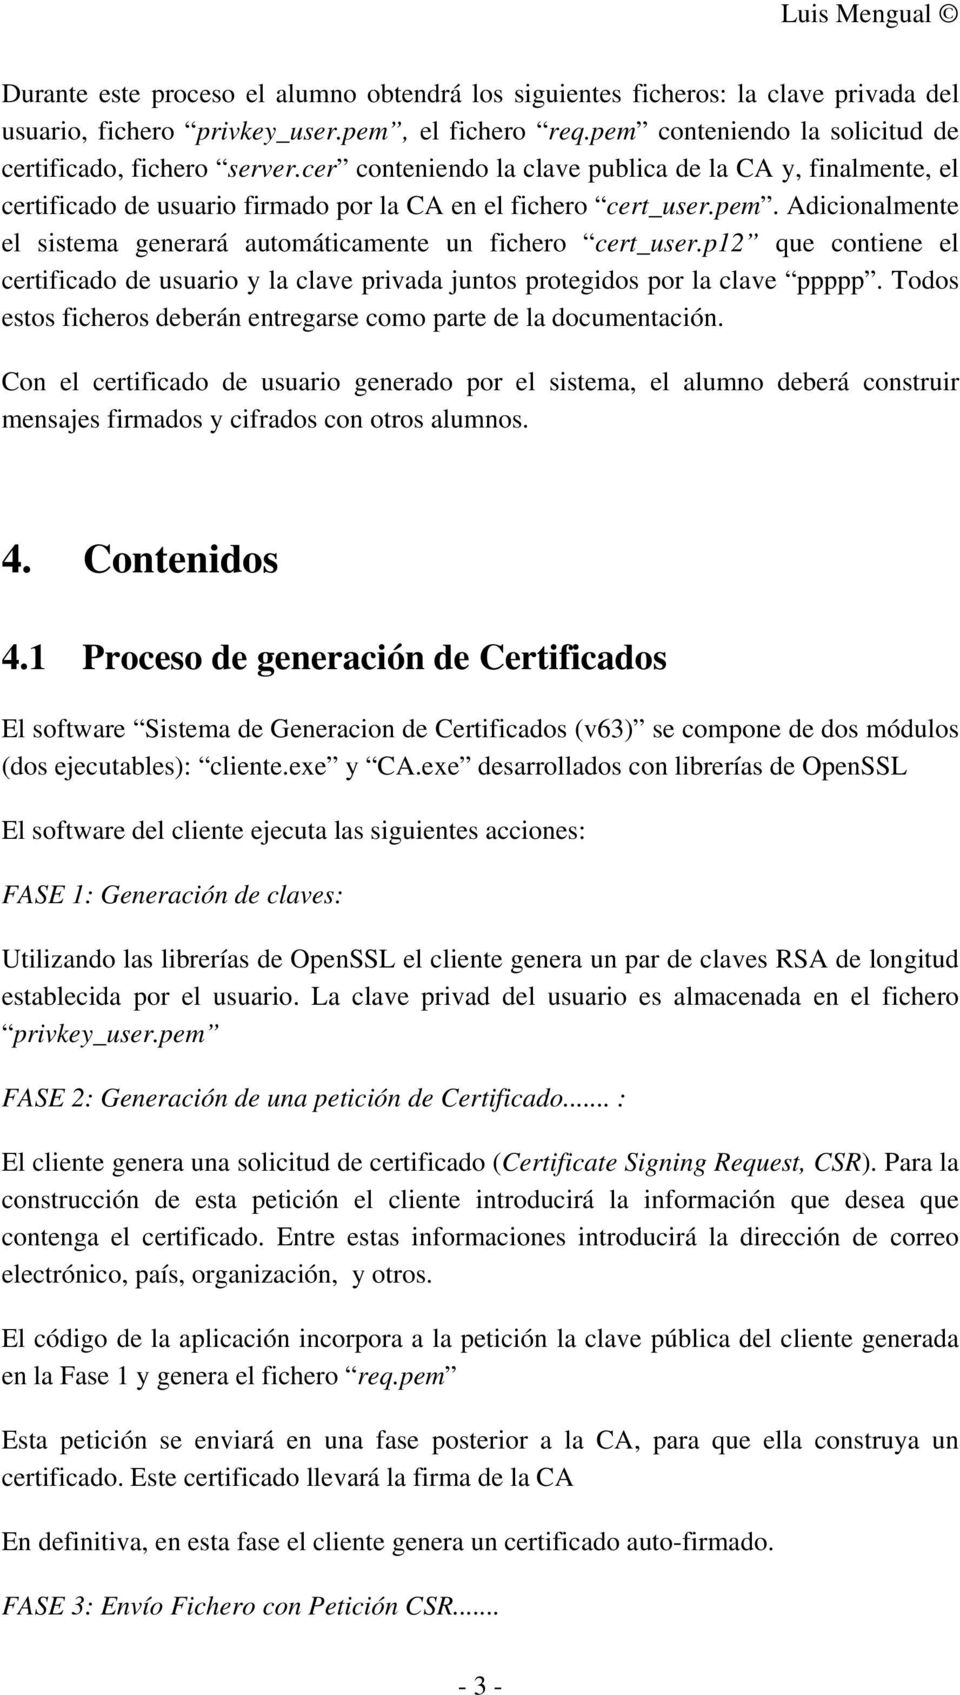 p12 que contiene el certificado de usuario y la clave privada juntos protegidos por la clave ppppp. Todos estos ficheros deberán entregarse como parte de la documentación.